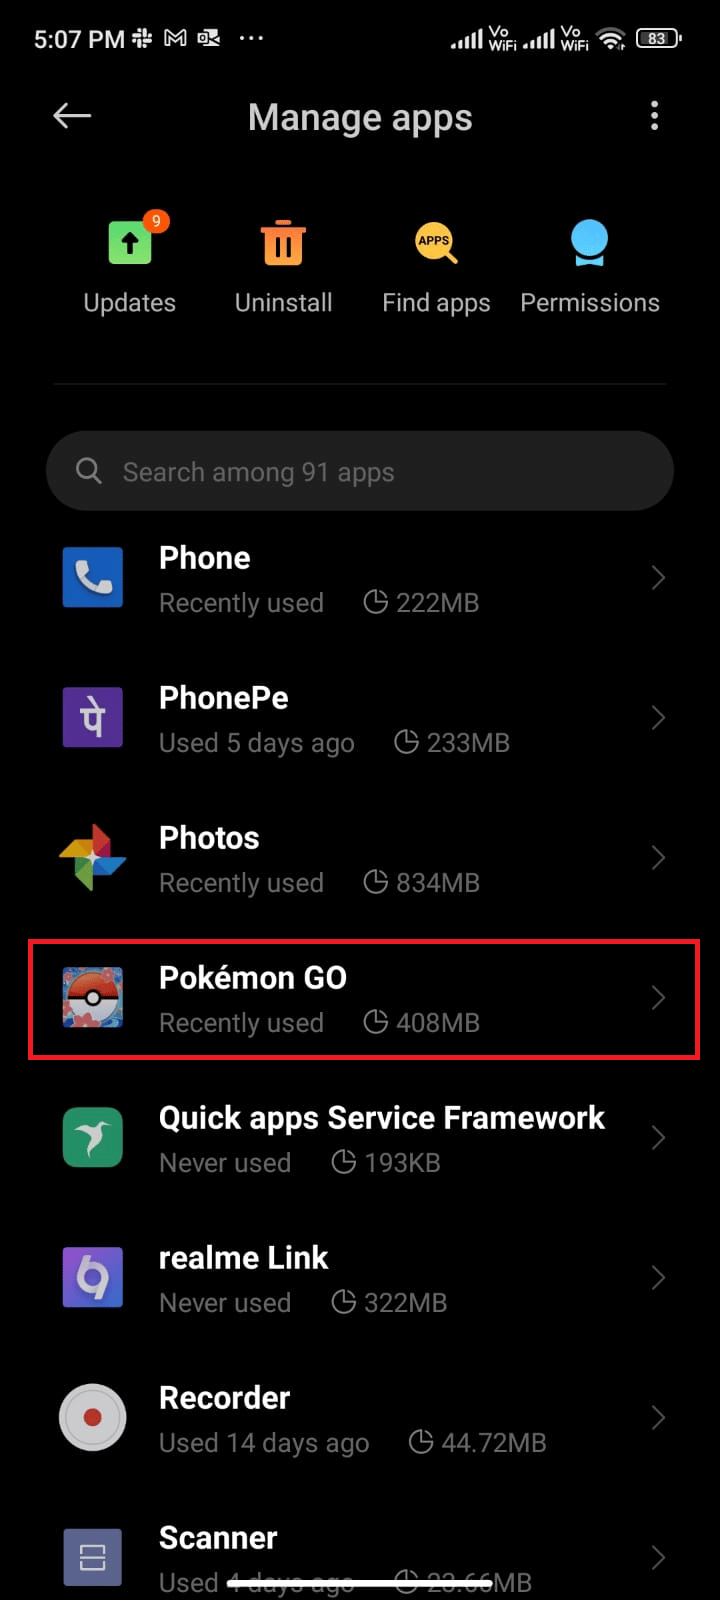 Toca Administrar aplicaciones seguido de Pokémon Go. Solucionar el error 26 de Pokémon Go